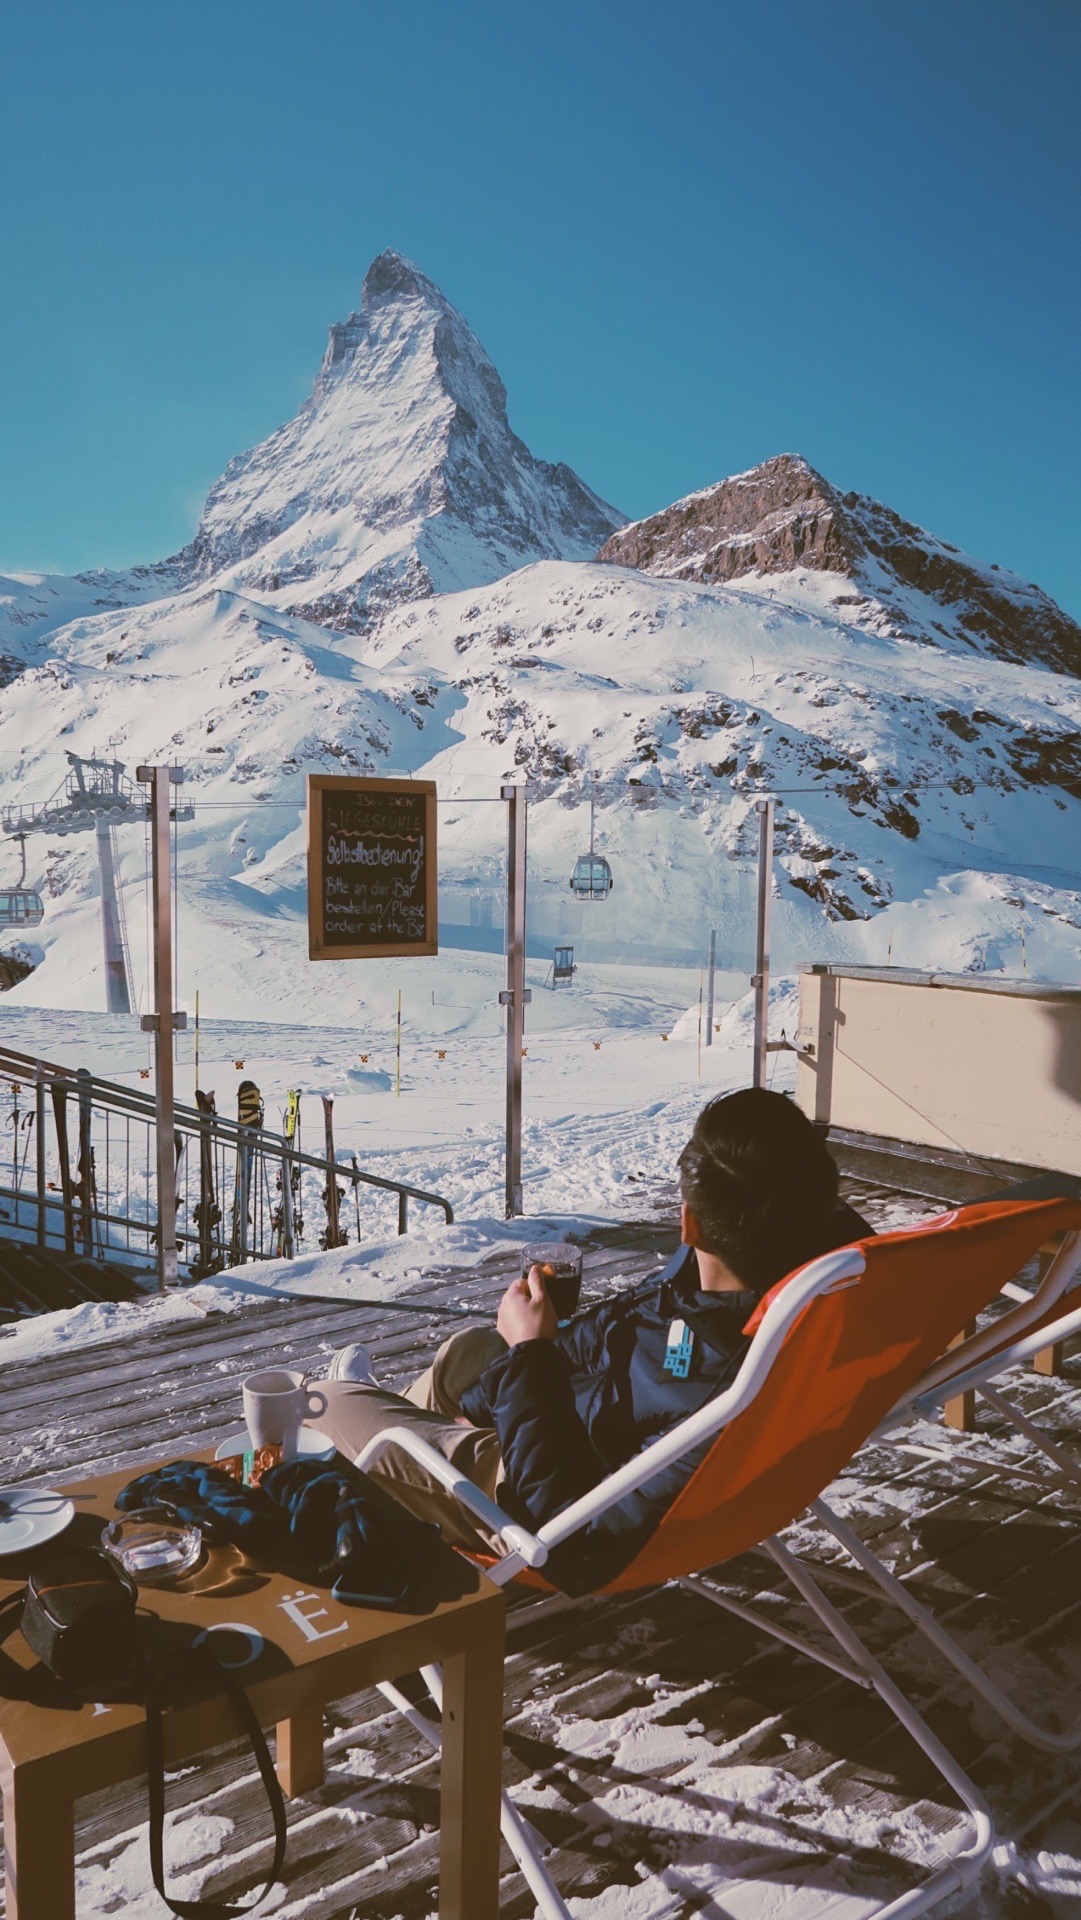 马特洪峰位于瑞士和意大利的交界处，这里也被誉为阿尔卑斯最美的雪山，由于造型独特也被印在各种瑞士的产品